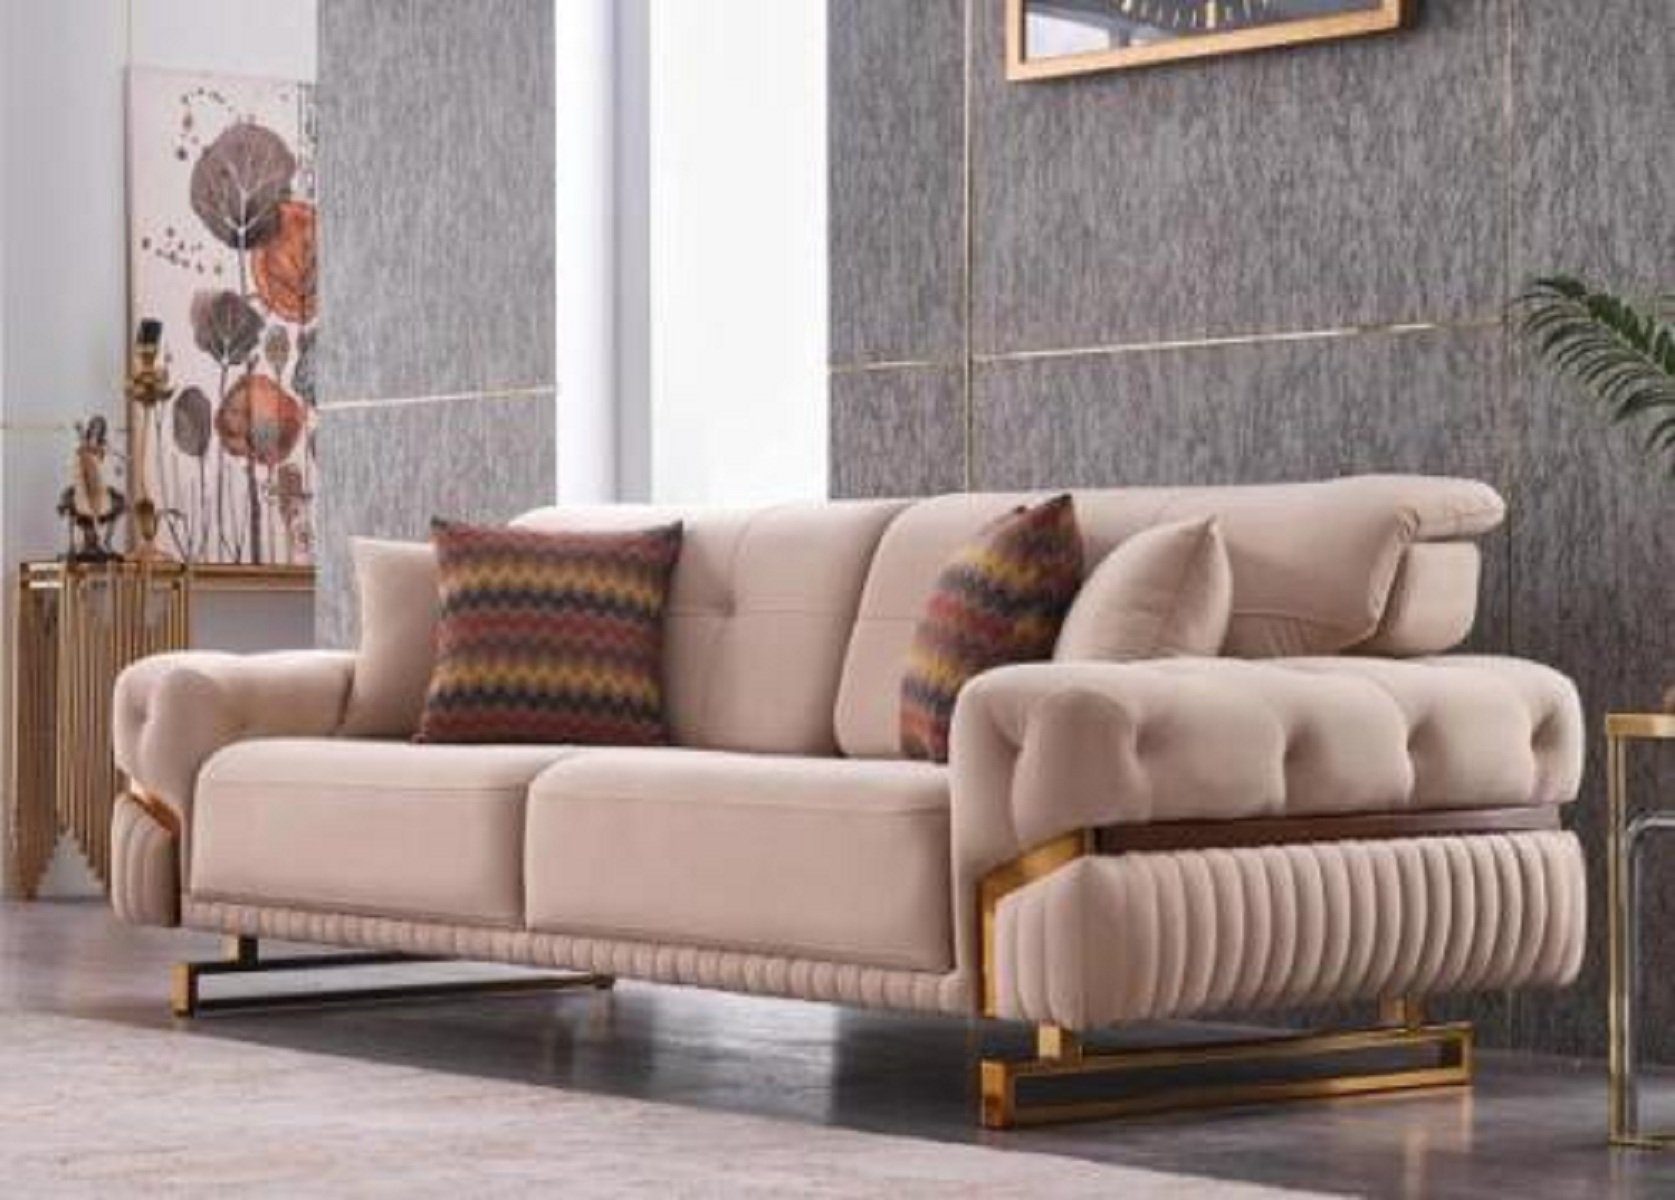 JVmoebel 3-Sitzer Beiger 3 sitzer Edelstahlmöbel Wohnzimmer Couch Luxus Textil Sofa, 1 Teile, Made in Europa